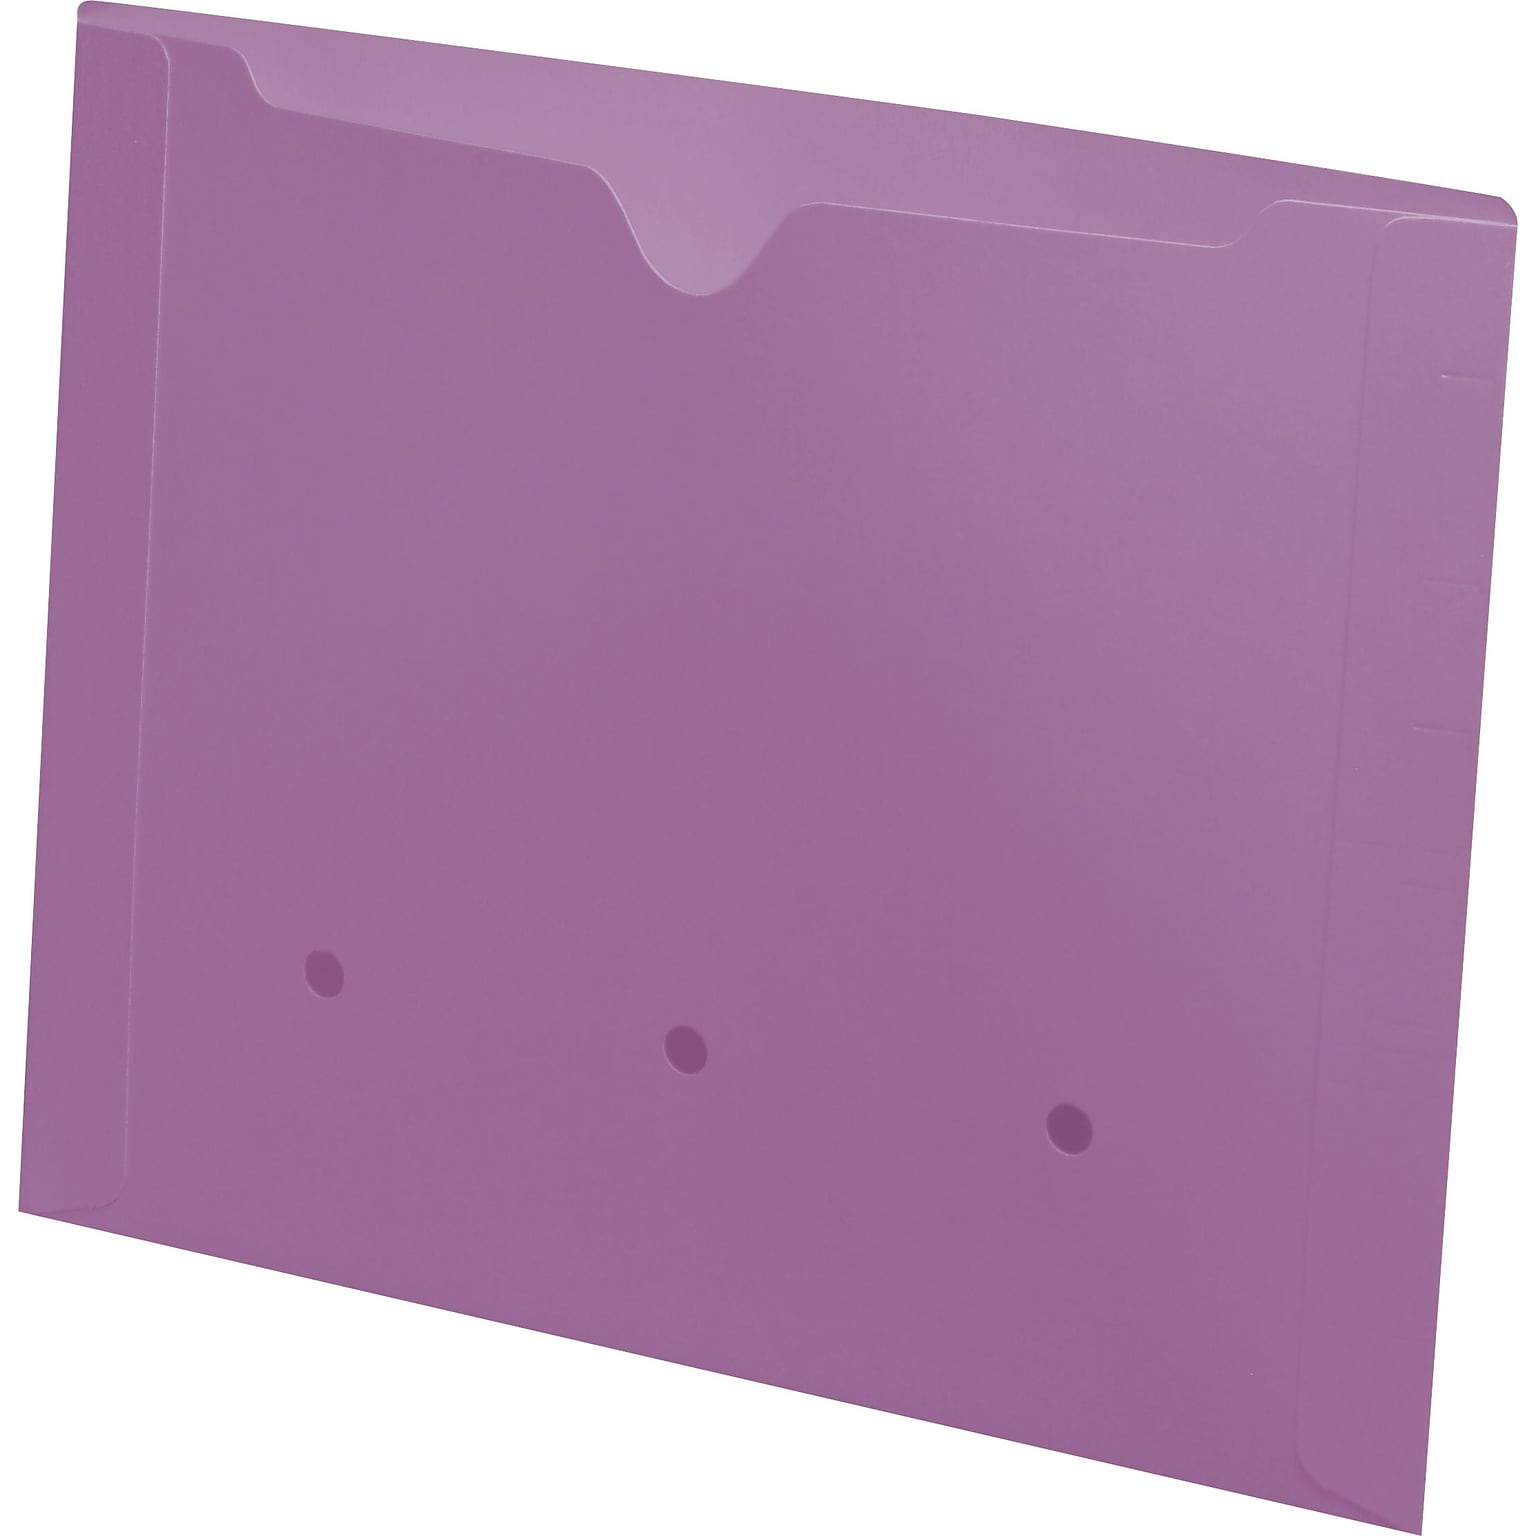 Medical Arts Press®  File Pocket, Letter Size, Lavender, 50/Box (52394LV)